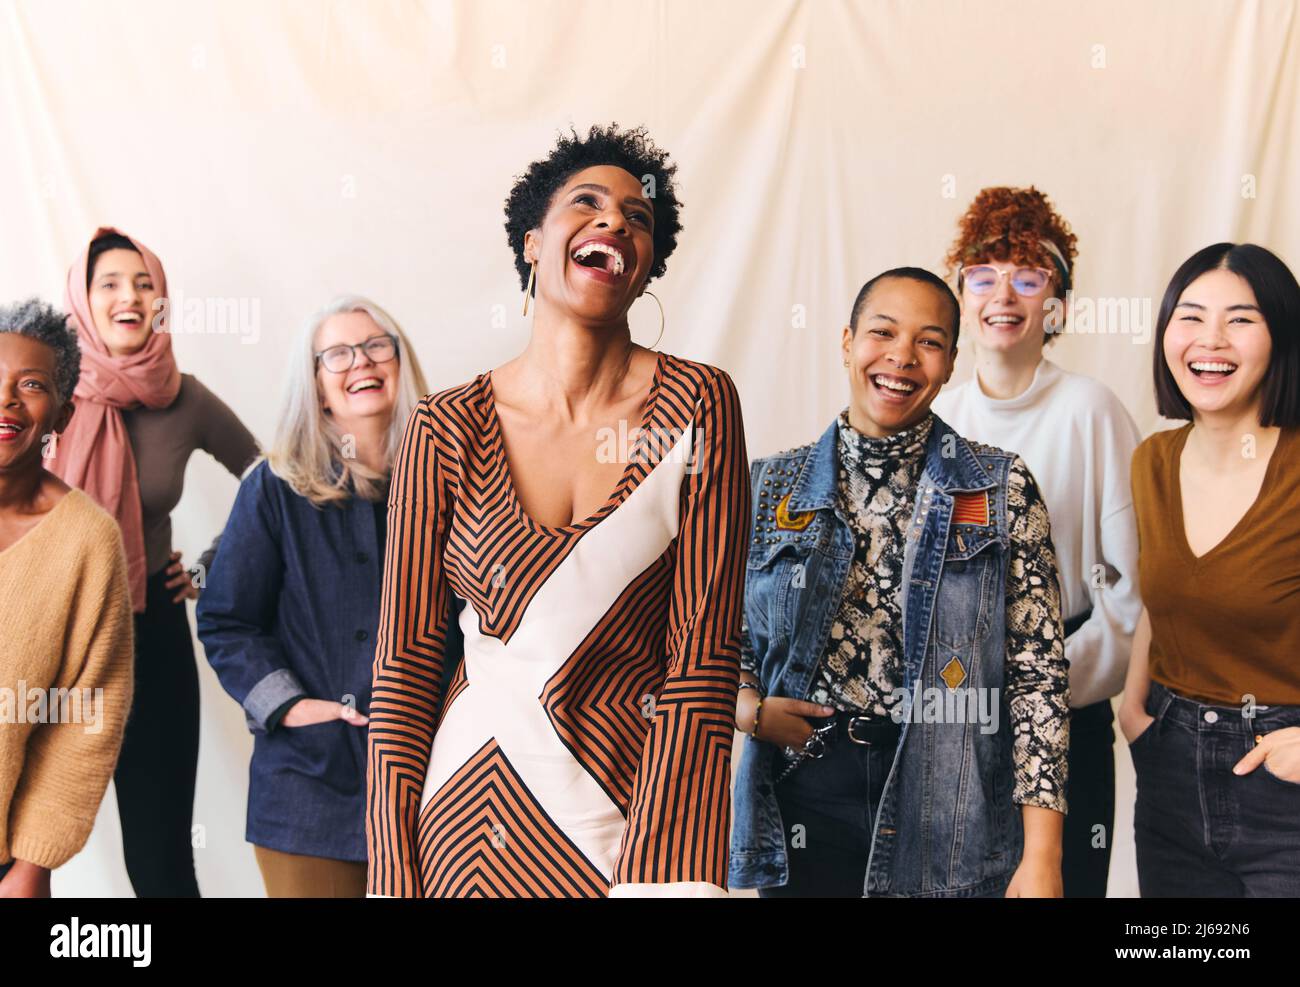 Retrato del Día Internacional de la Mujer de mujeres alegres de rango de edades mixtas multiétnicas riendo y sonriendo Foto de stock